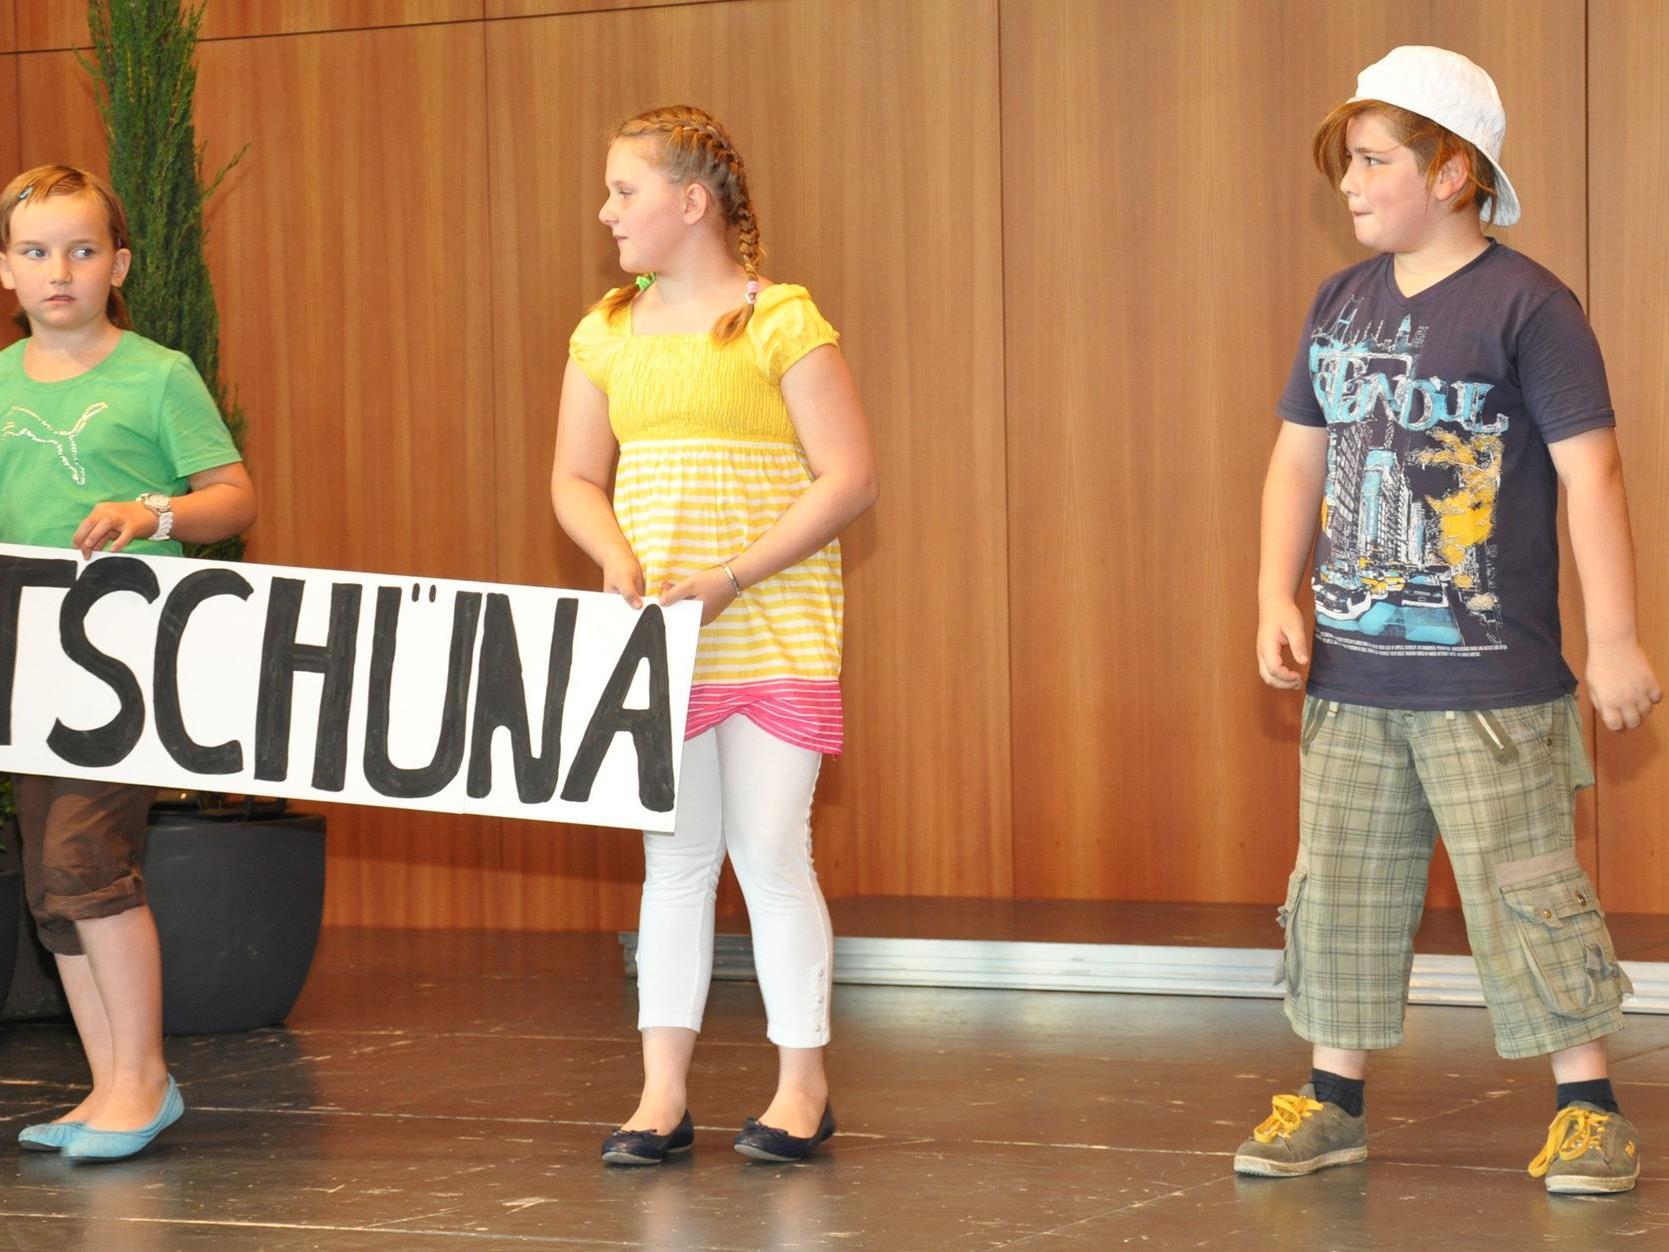 Mundartausdrücke, präsentiert von Volksschülern. ,,Tschüna", so heißt der Haarschlurf in die Stirn.